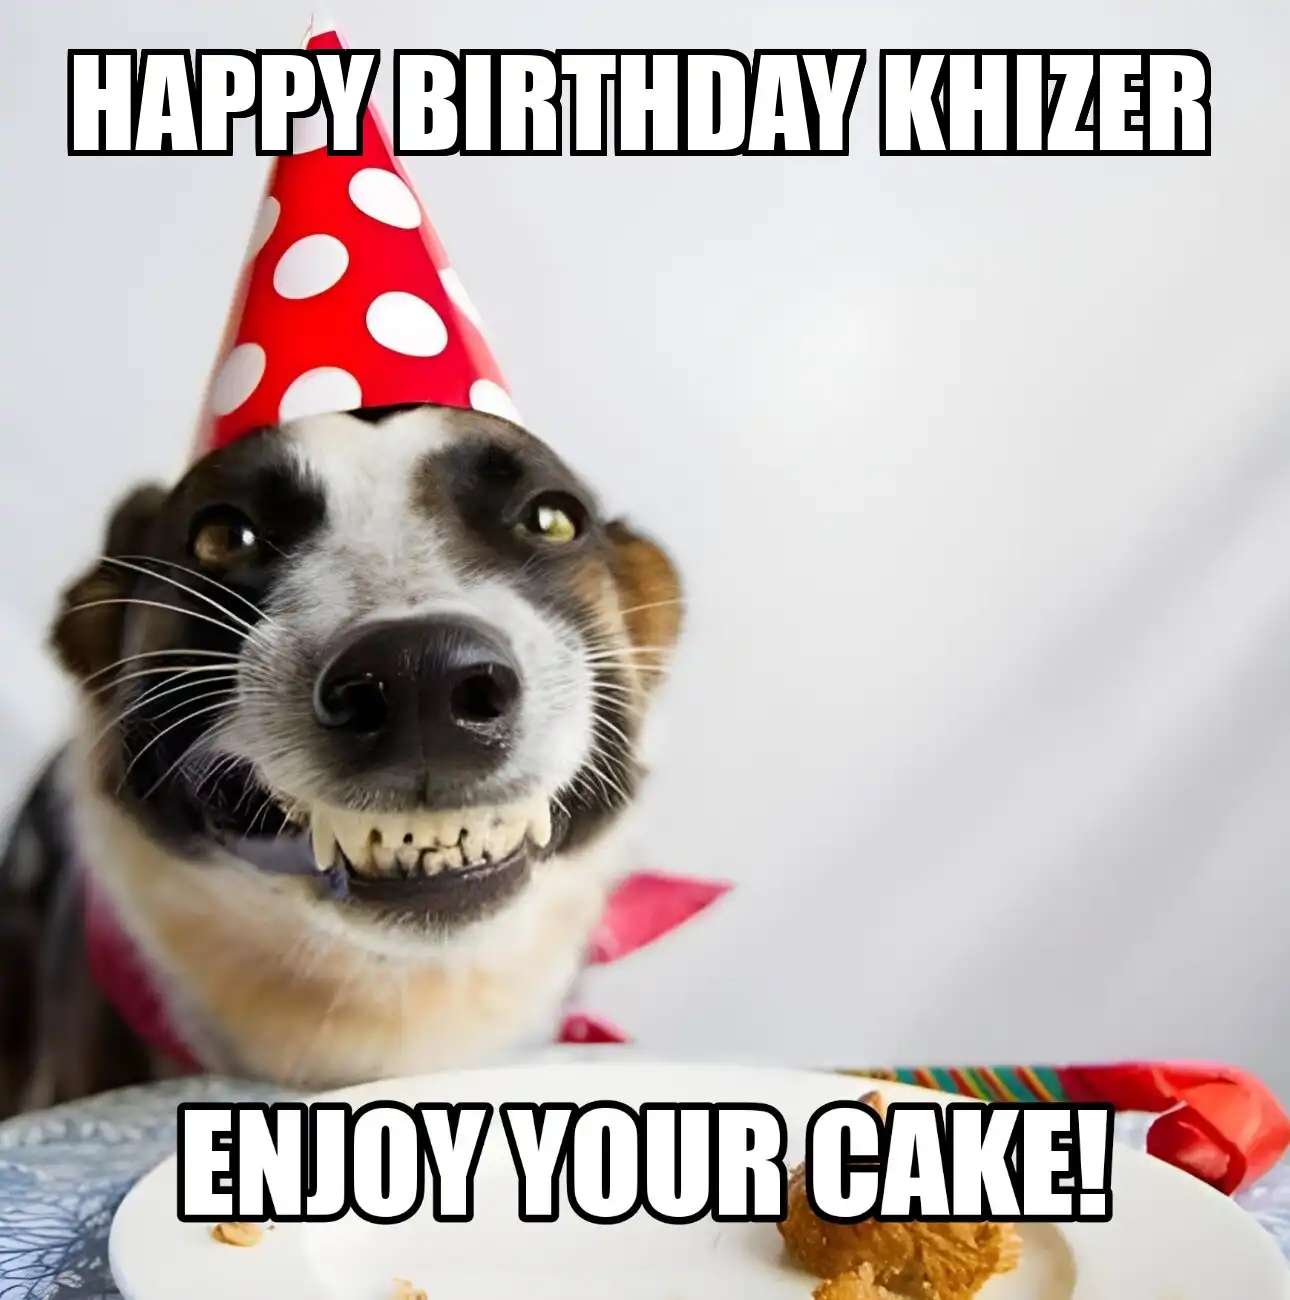 Happy Birthday Khizer Enjoy Your Cake Dog Meme